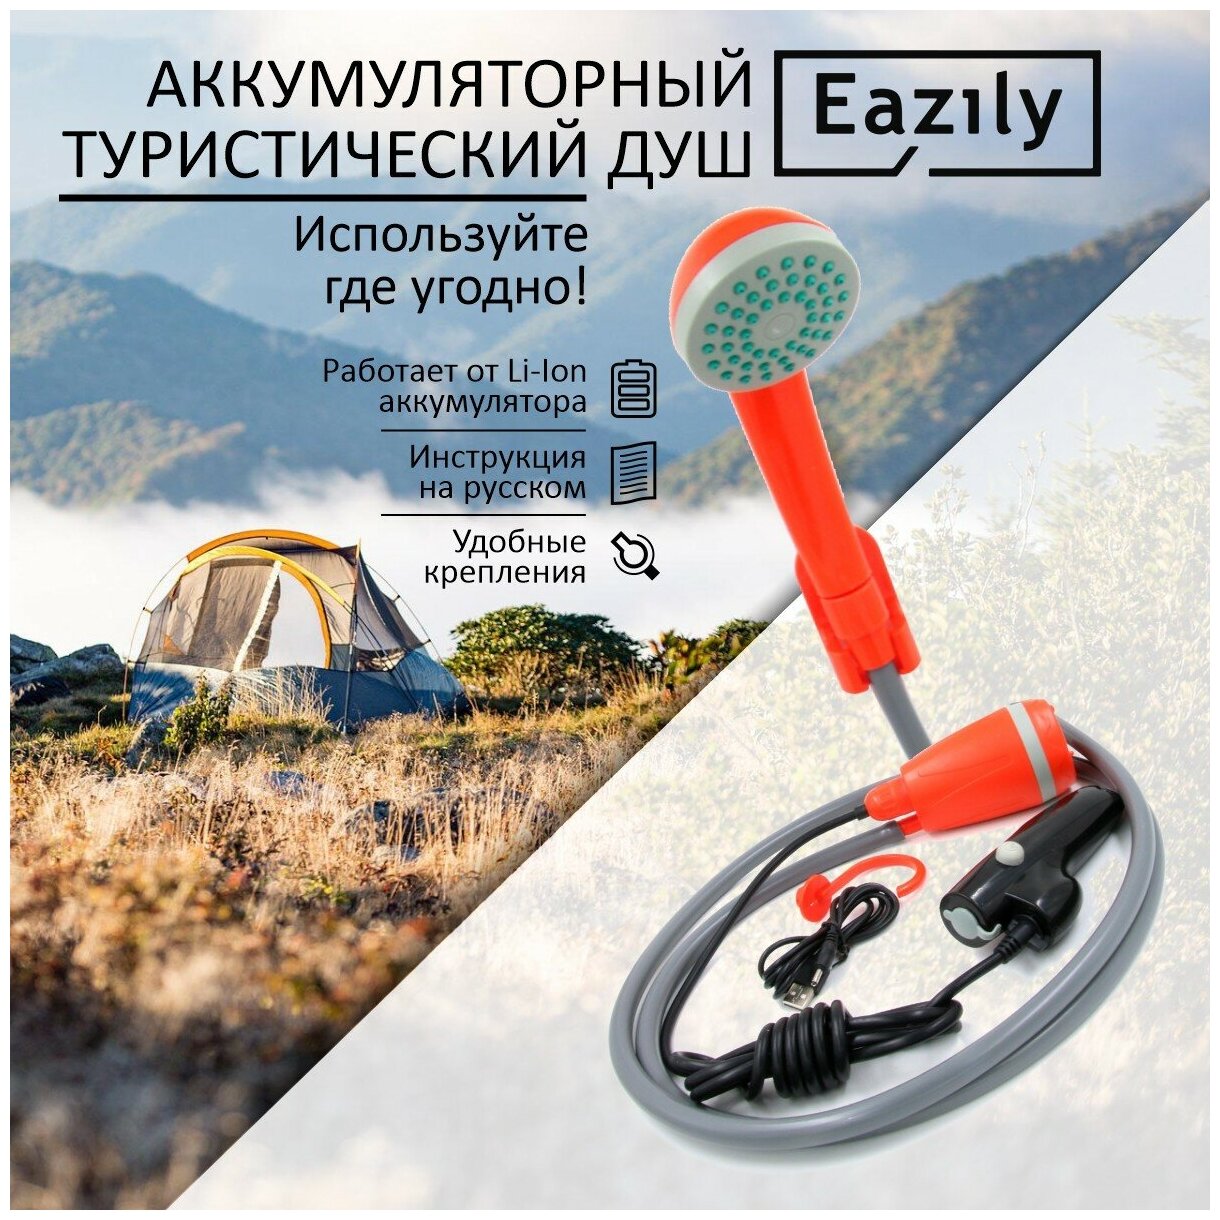 Аккумуляторный туристический EAZILY/Душ походный аккумуляторный/Душ аккумуляторный/дачный